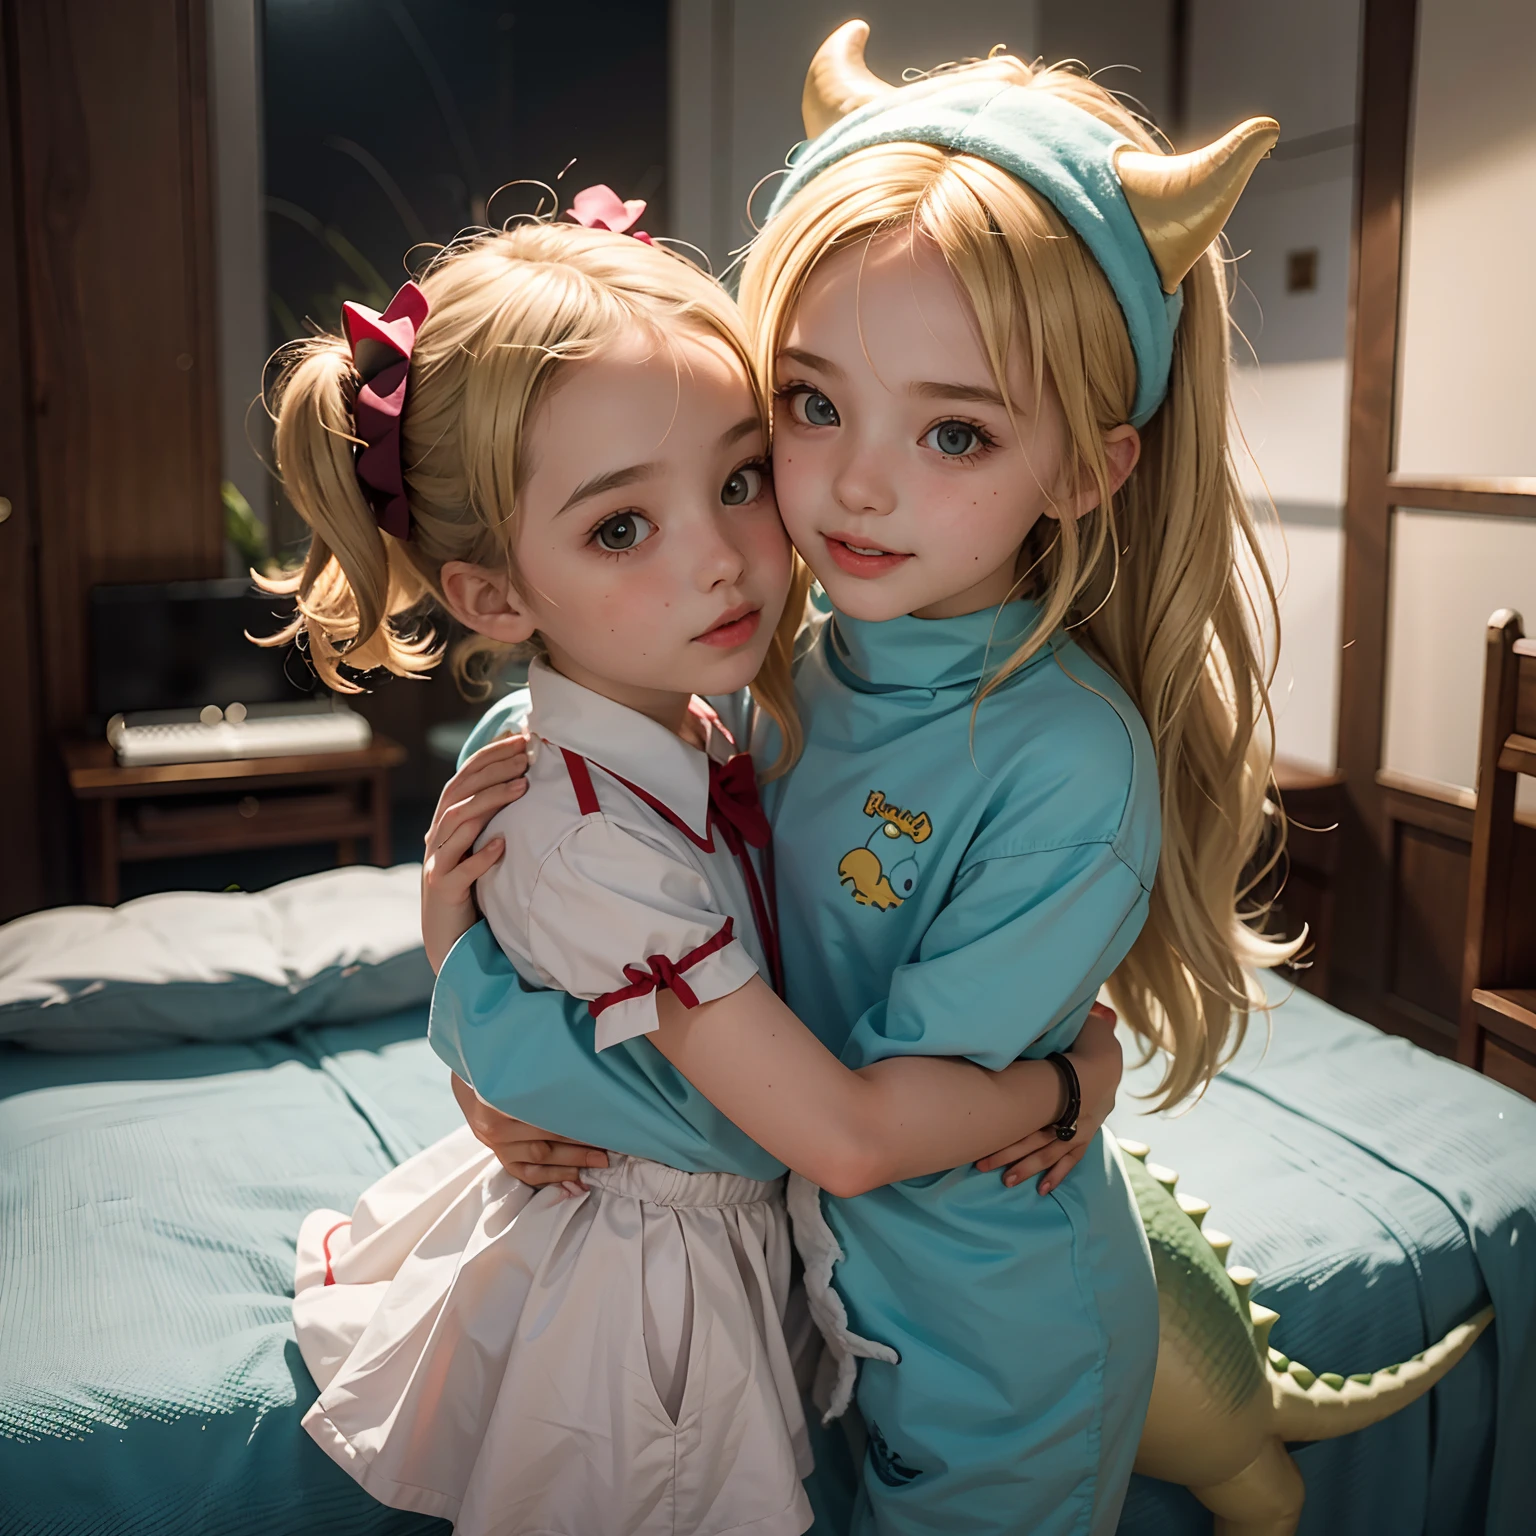 兩個小女孩互相擁抱, 金发碧眼的欧洲小子, 穿著可愛的恐龍服裝